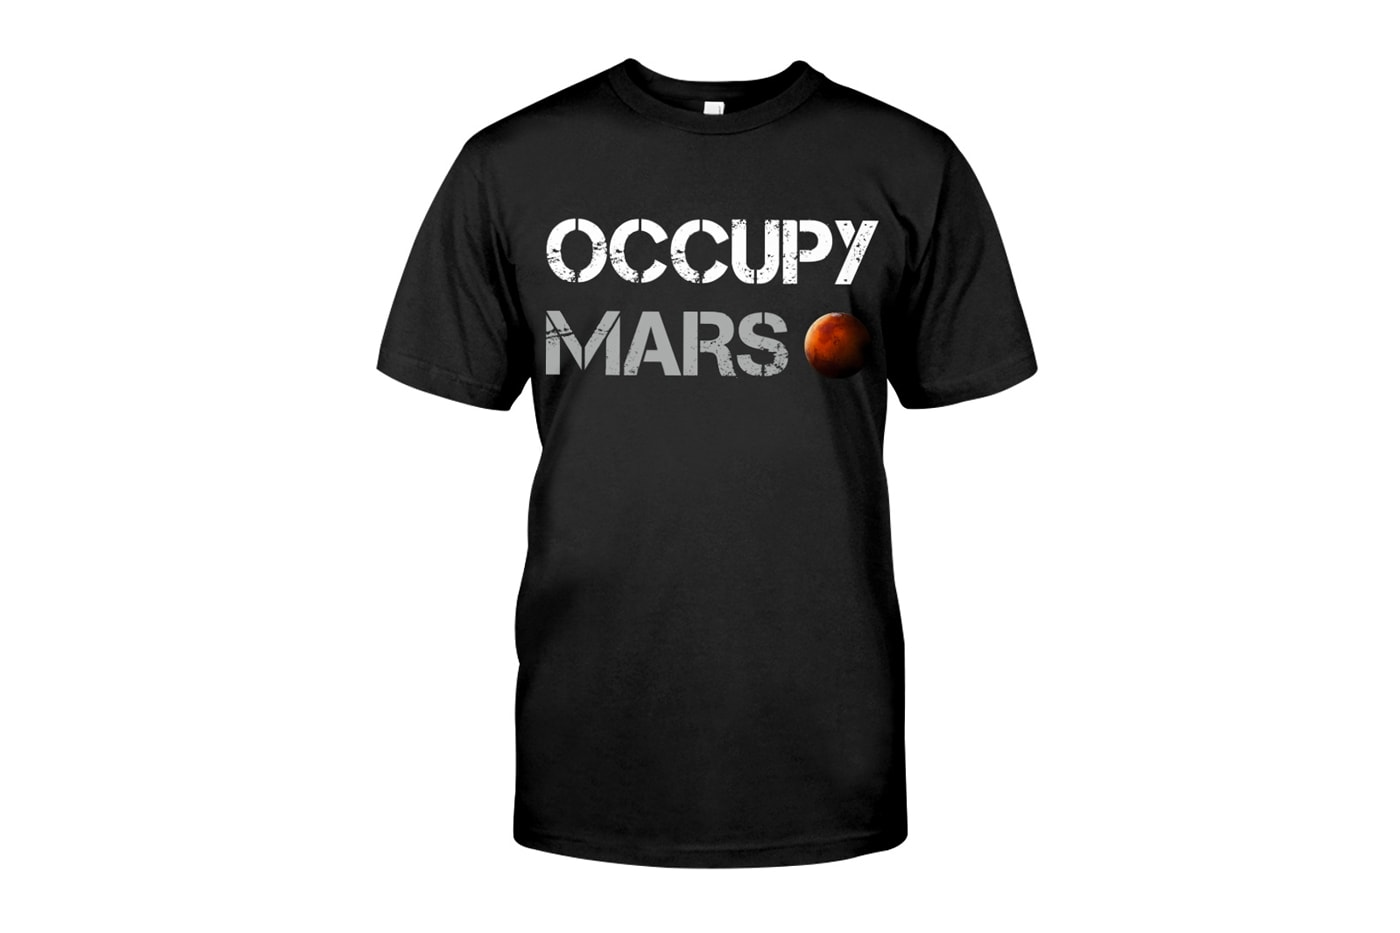 단돈 2만6천 원에 일론 머스크의 화성 이주 계획을 담은 티셔츠를 살 수 있다, occupy mars, 아큐파이 마스